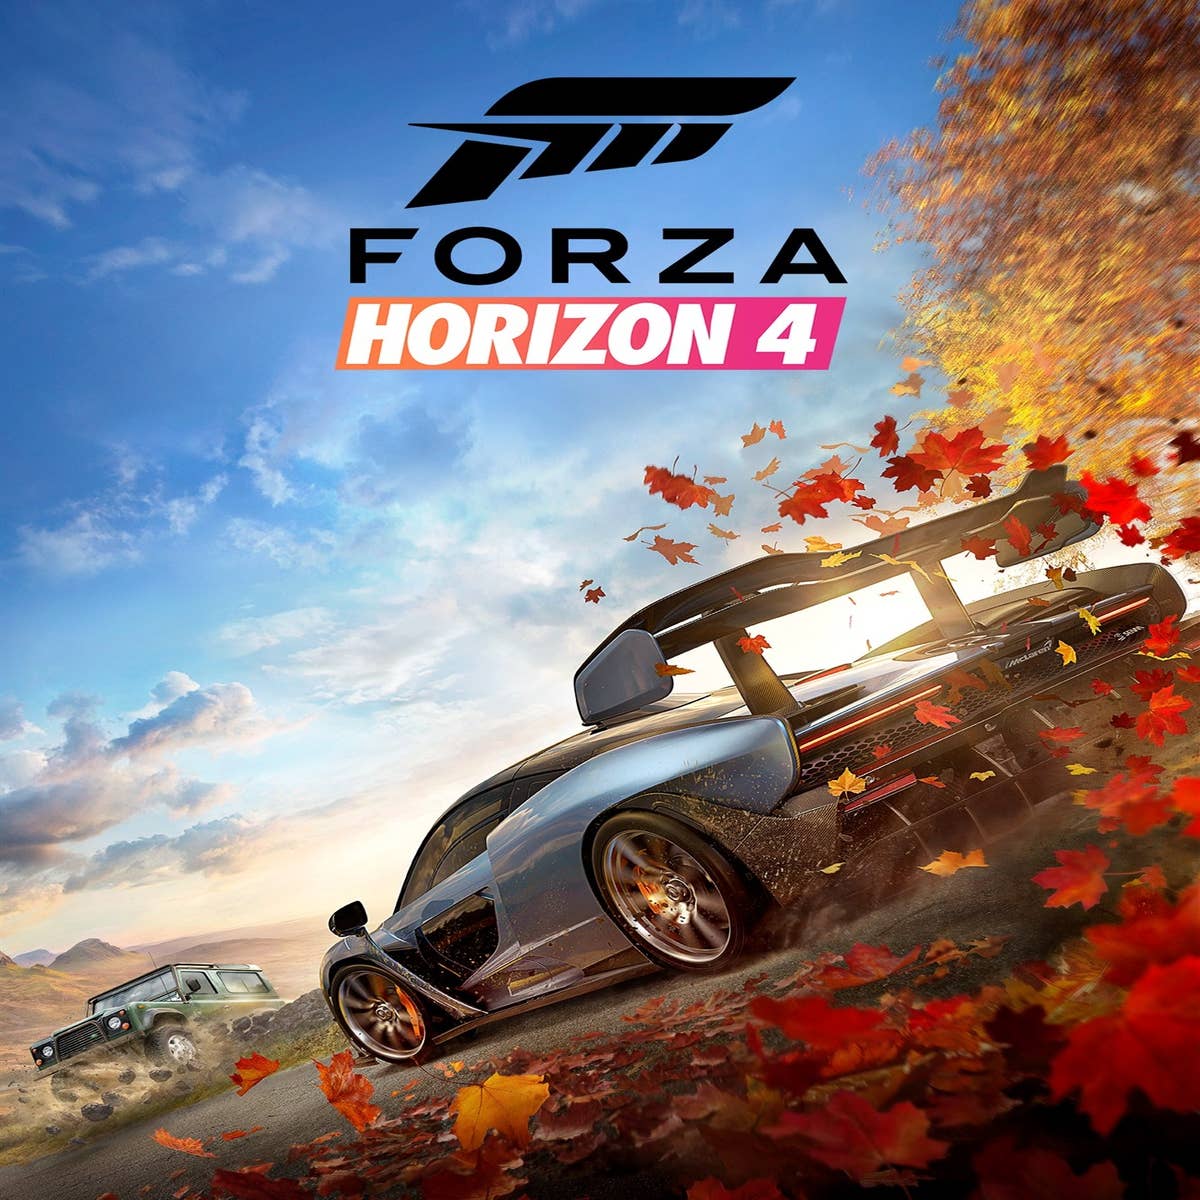 Já vá se preparando para jogar Forza Horizon 4 em 2018